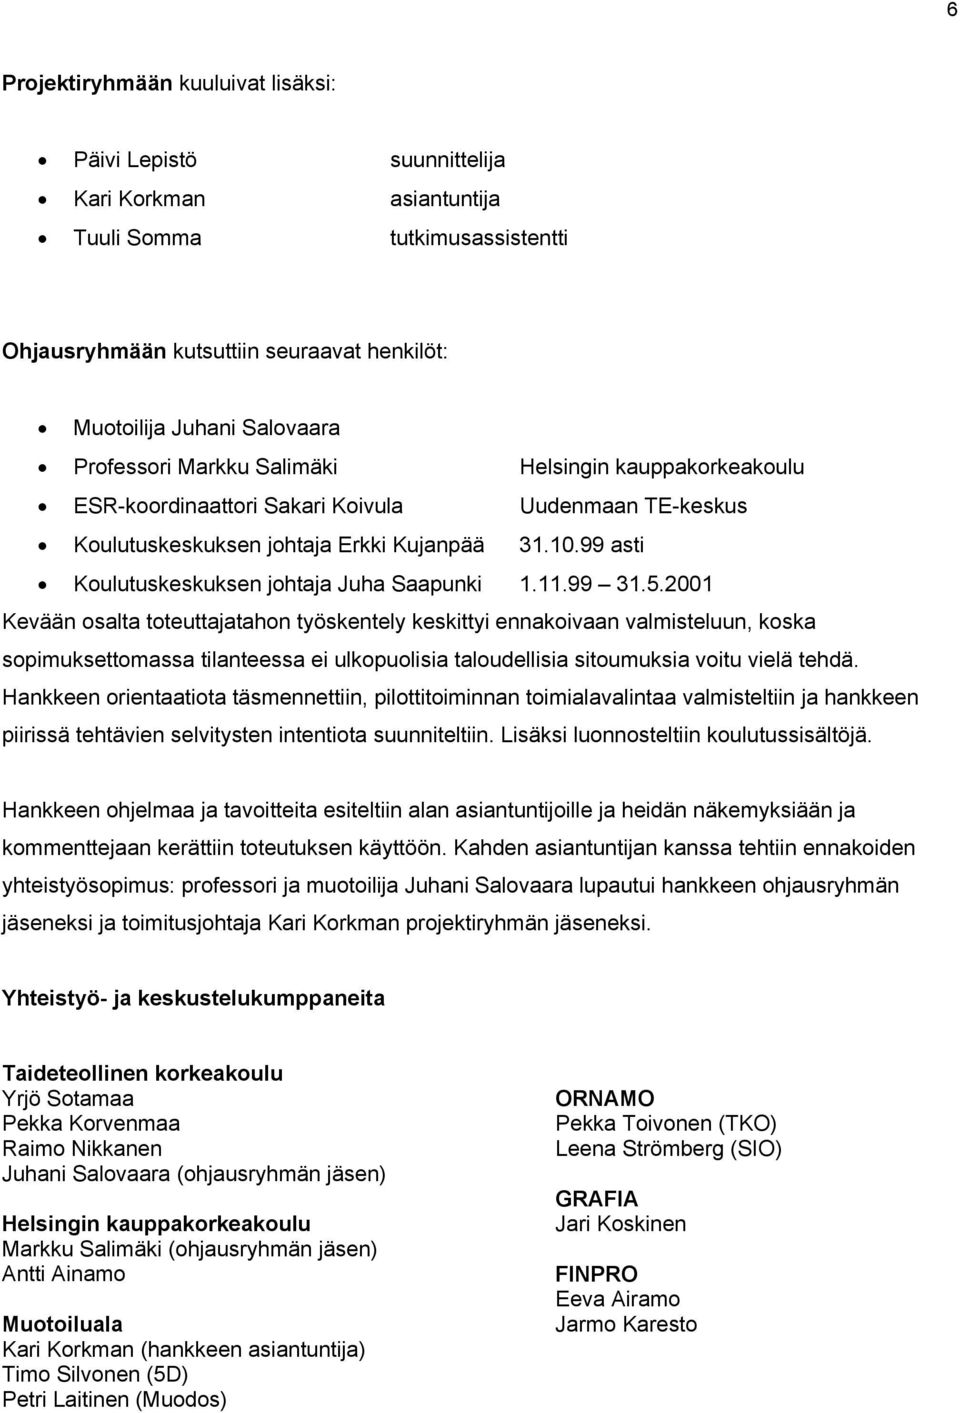 99 asti Koulutuskeskuksen johtaja Juha Saapunki 1.11.99 31.5.